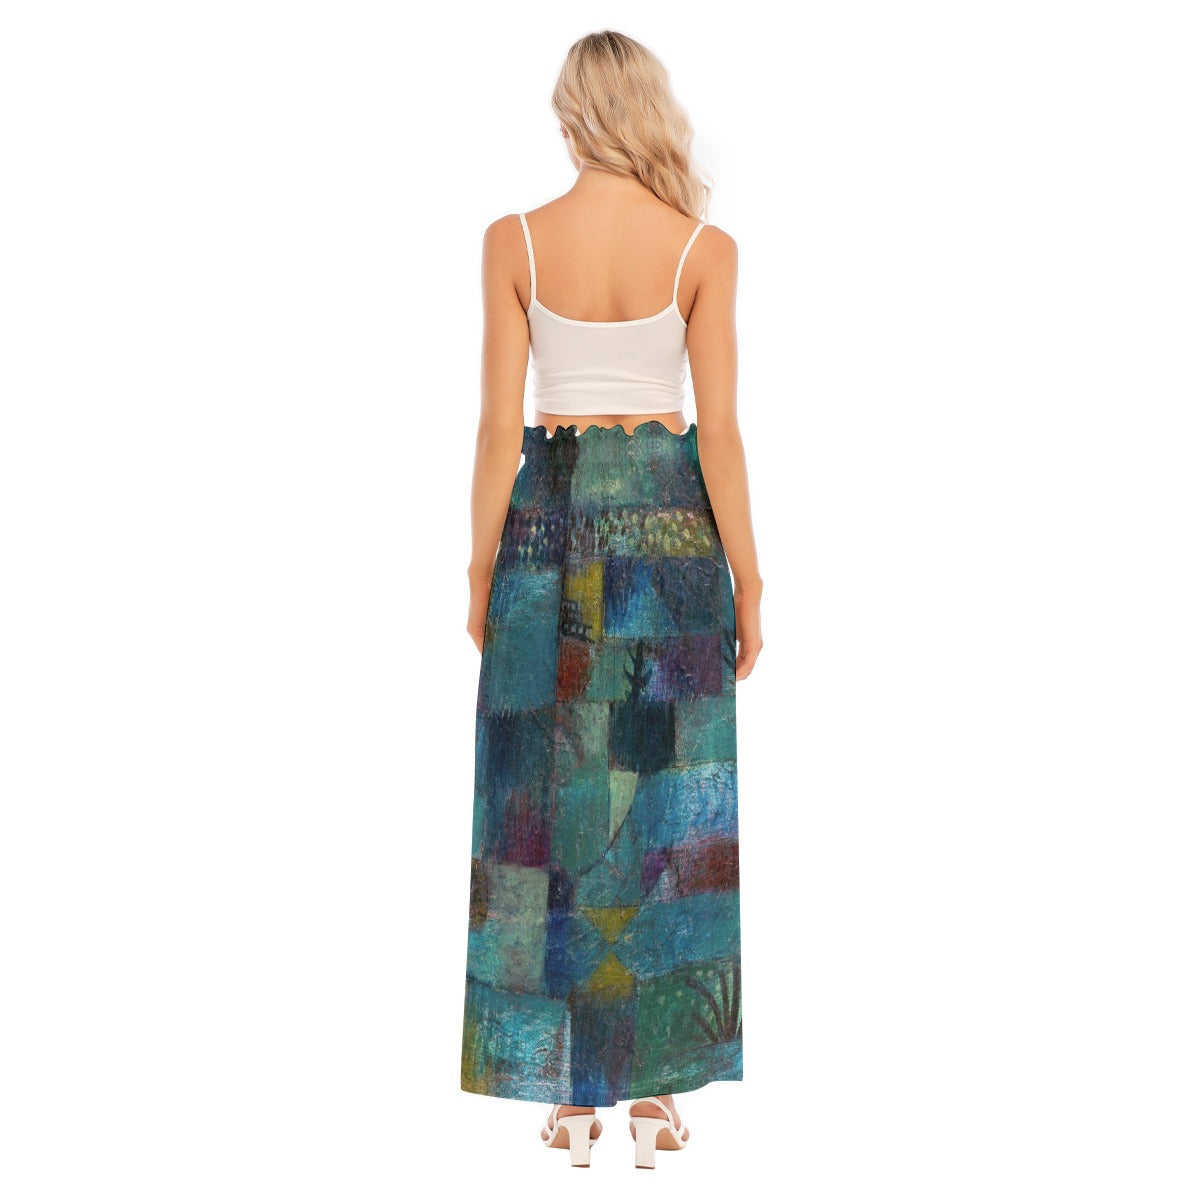 Artistic Skirt Inspired by Paul Klee